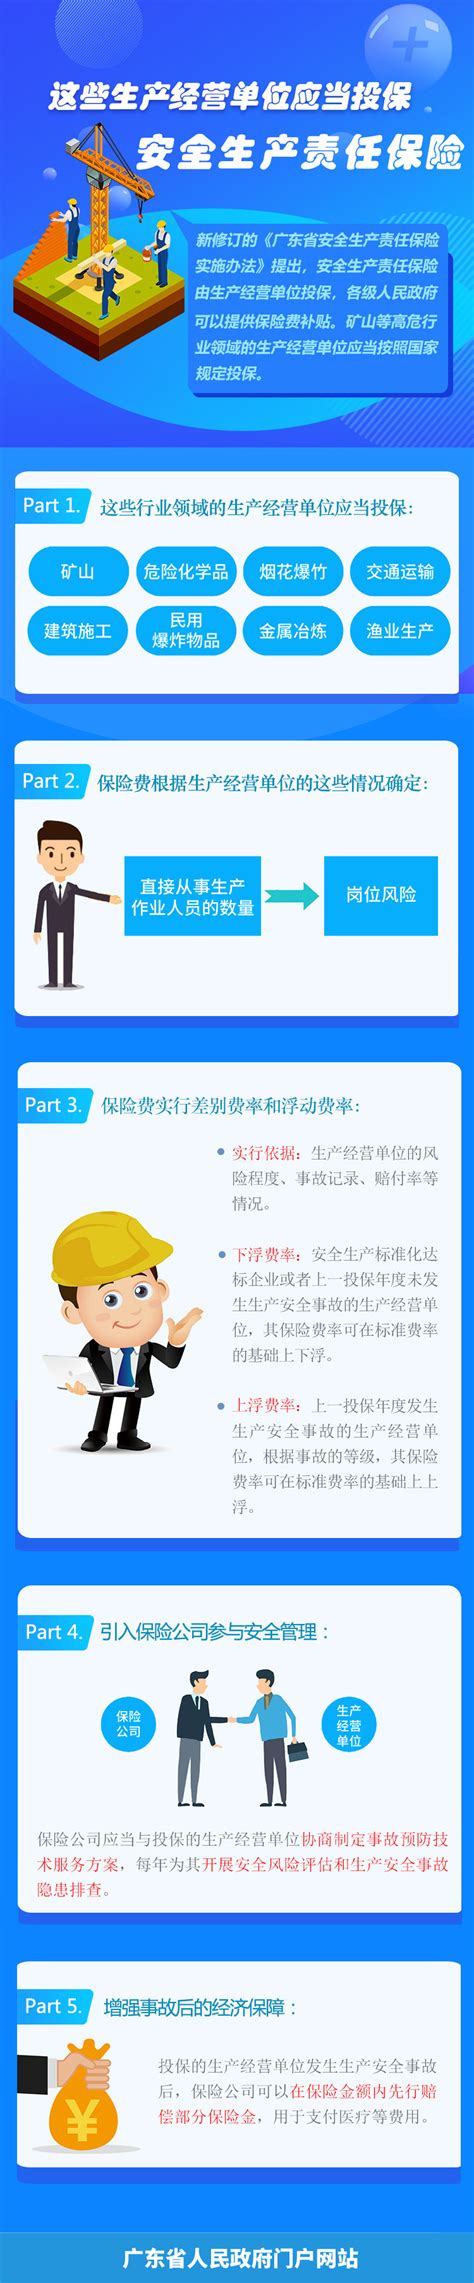 广州市安全生产责任保险实施办法